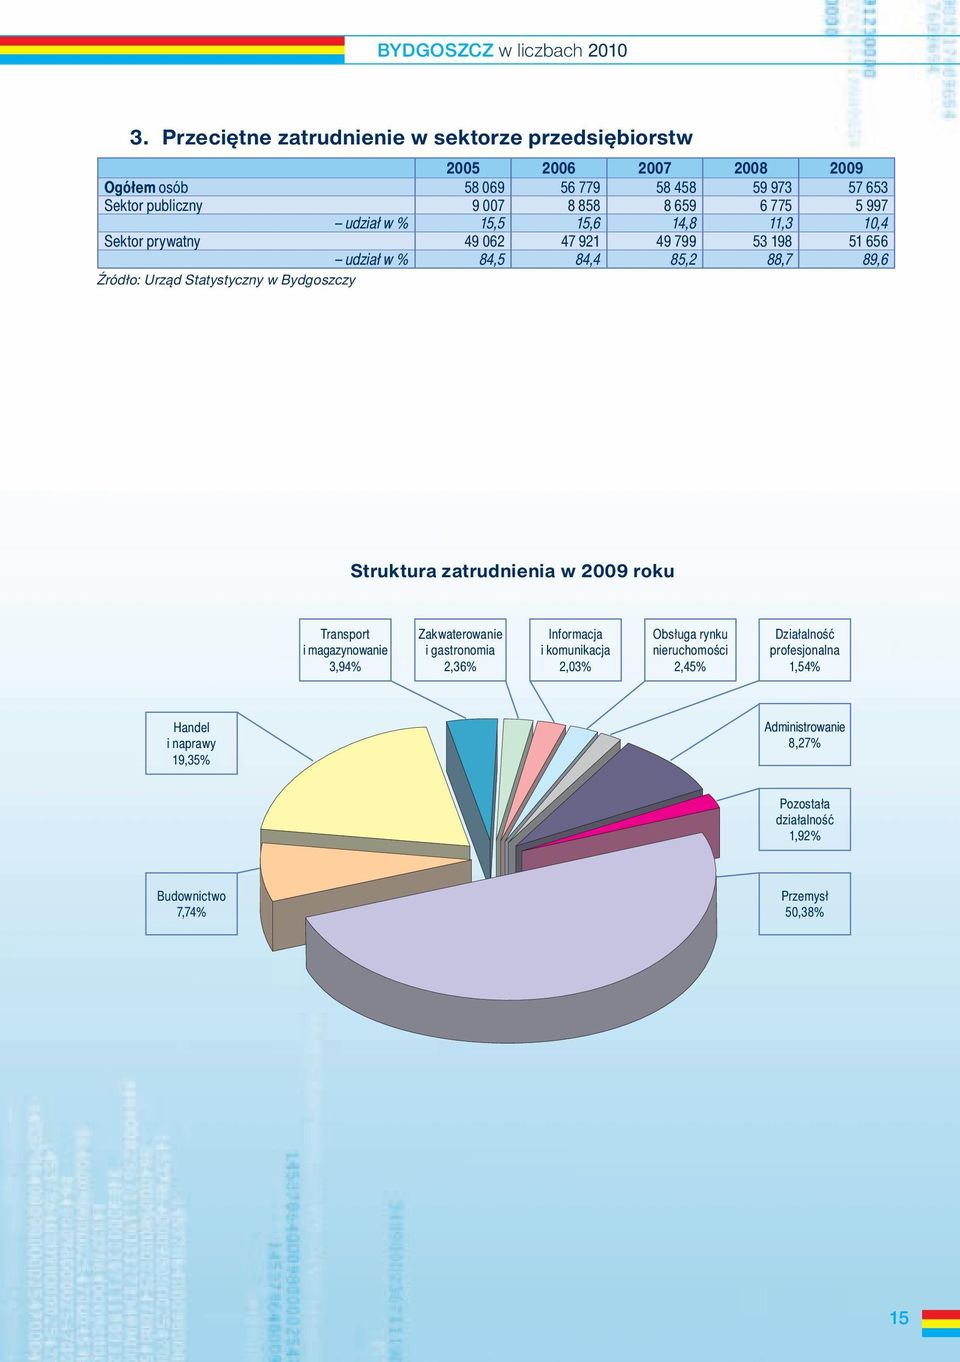 w Bydgoszczy Struktura zatrudnienia w 2009 roku Transport i magazynowanie 3,94% Zakwaterowanie i gastronomia 2,36% Informacja i komunikacja 2,03% Obsługa rynku